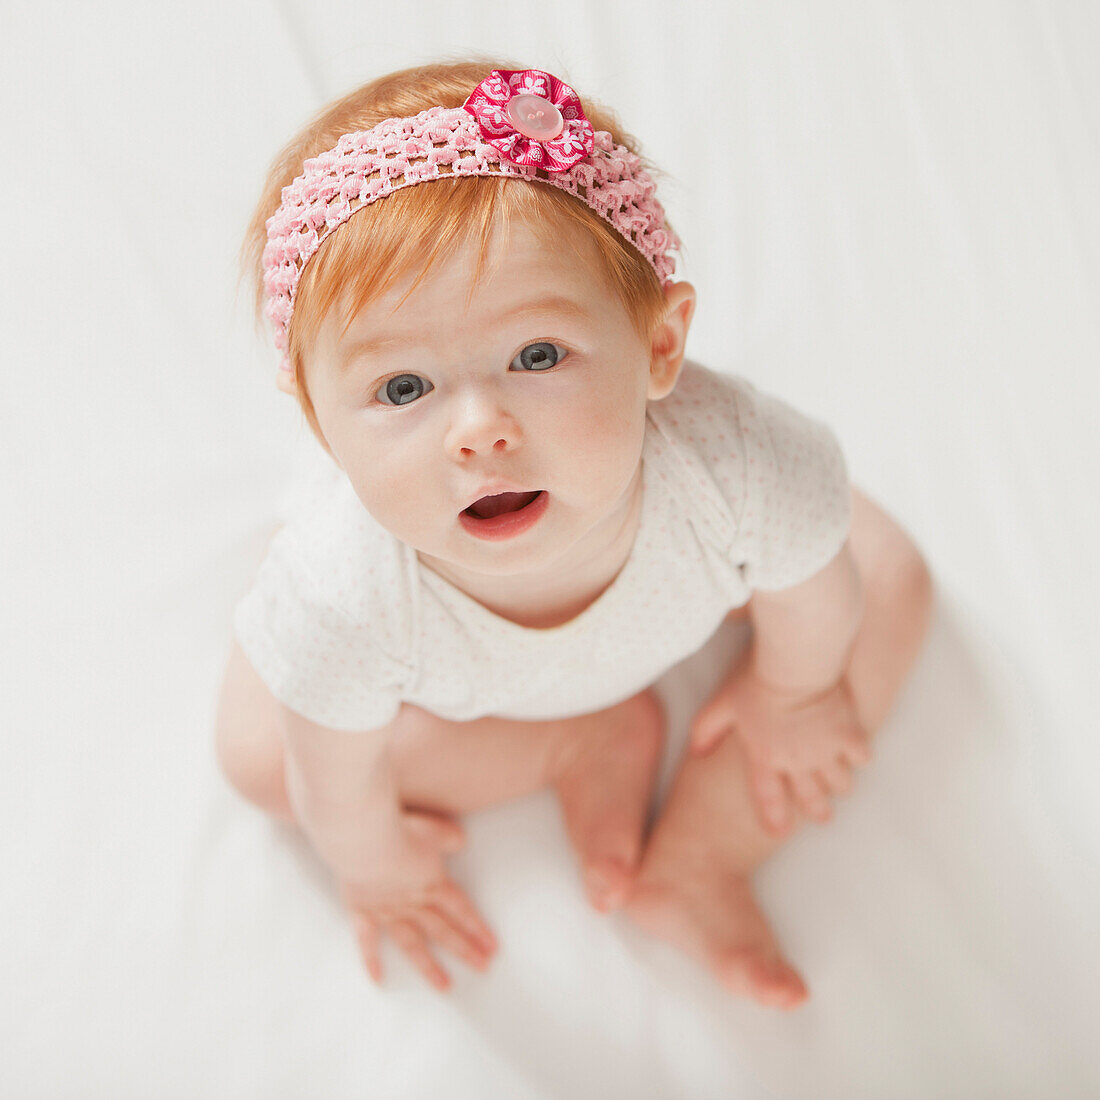 Serious Caucasian baby girl, Lehi, Utah, USA